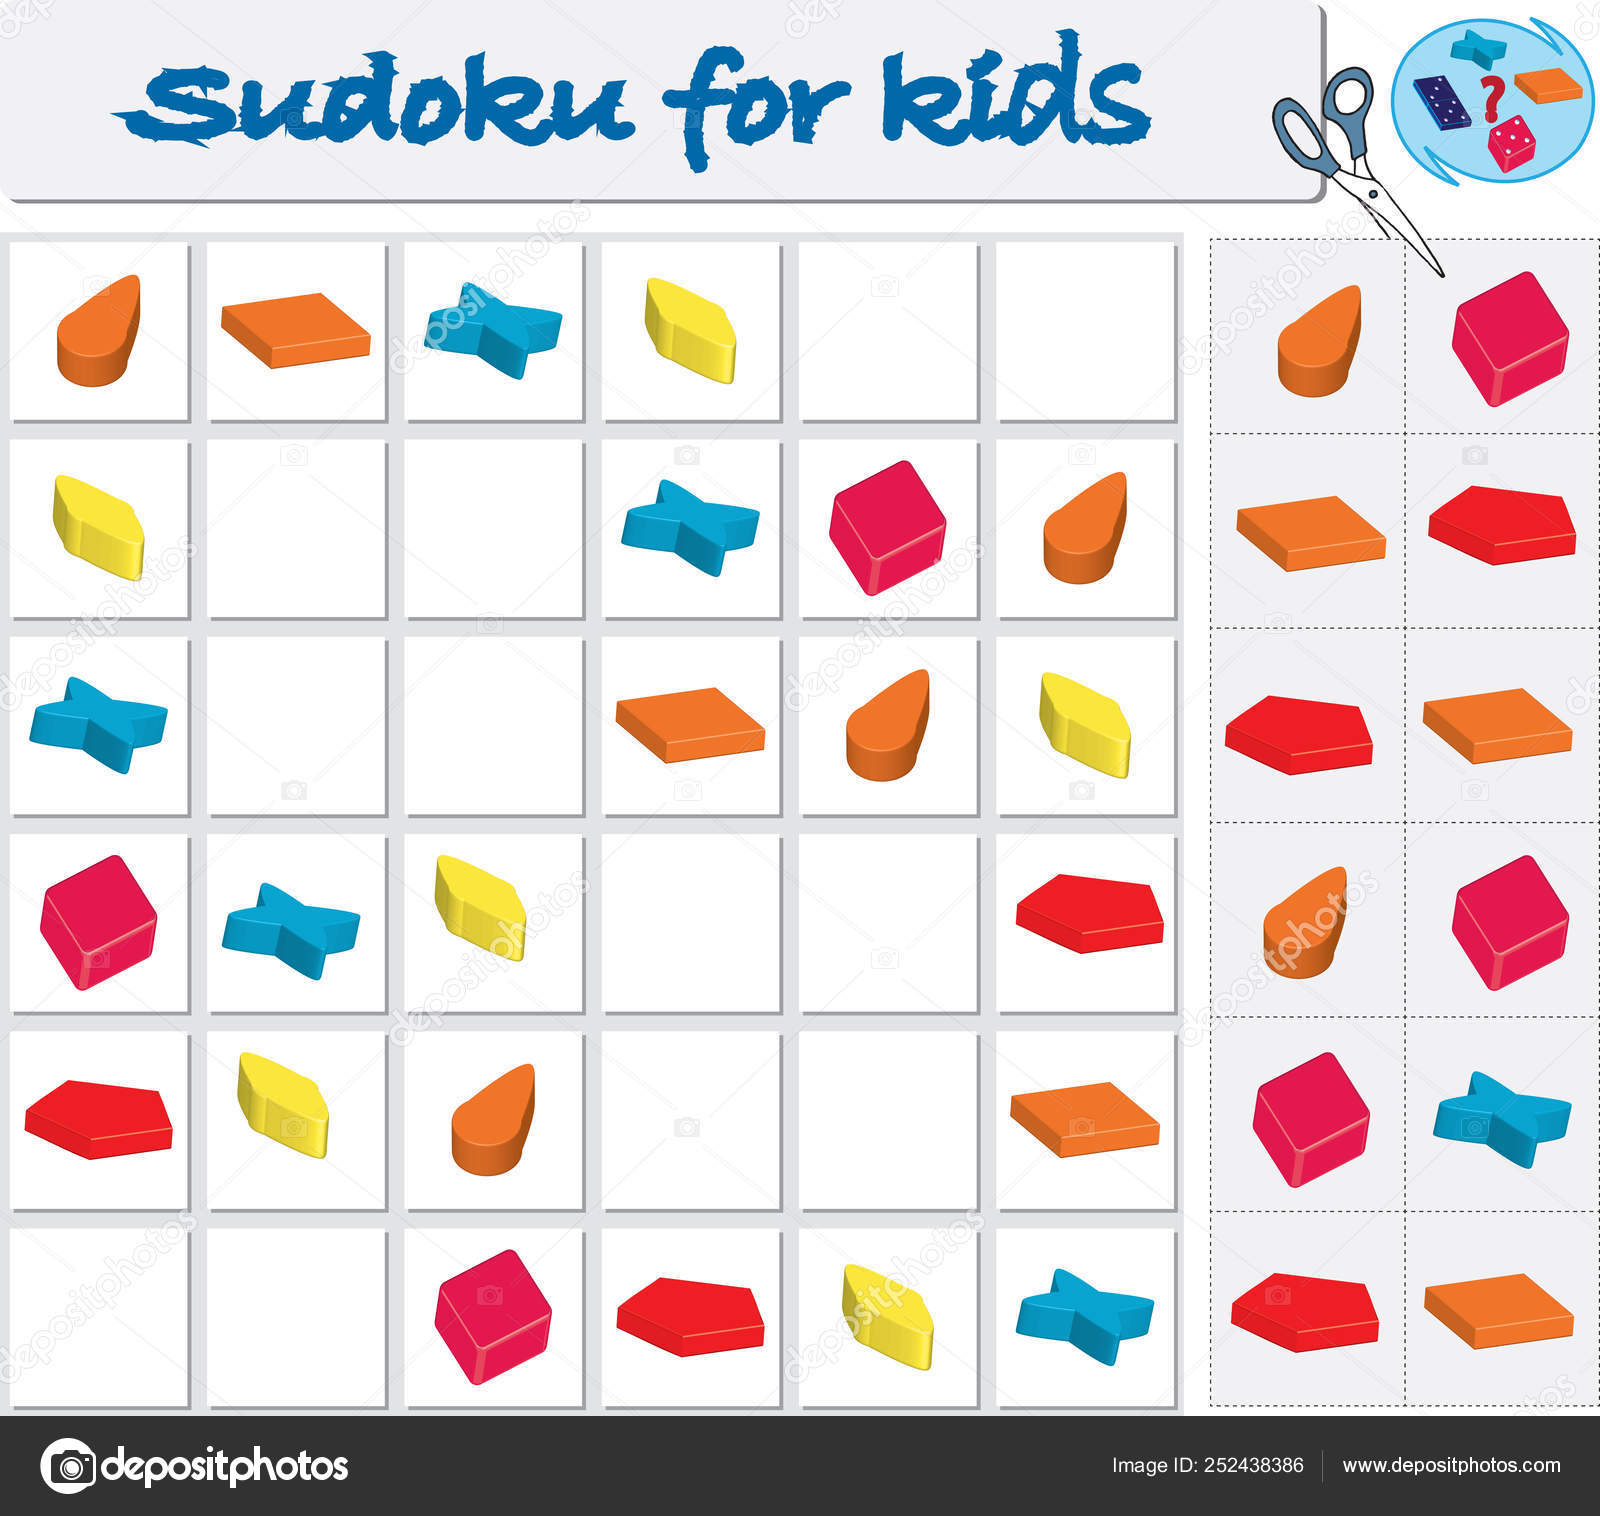 valor matiz rompecabezas Sudoku para niños con figuras geométricas de colores. Juego para presch  vector, gráfico vectorial © ARTBALANCE imagen #252438386